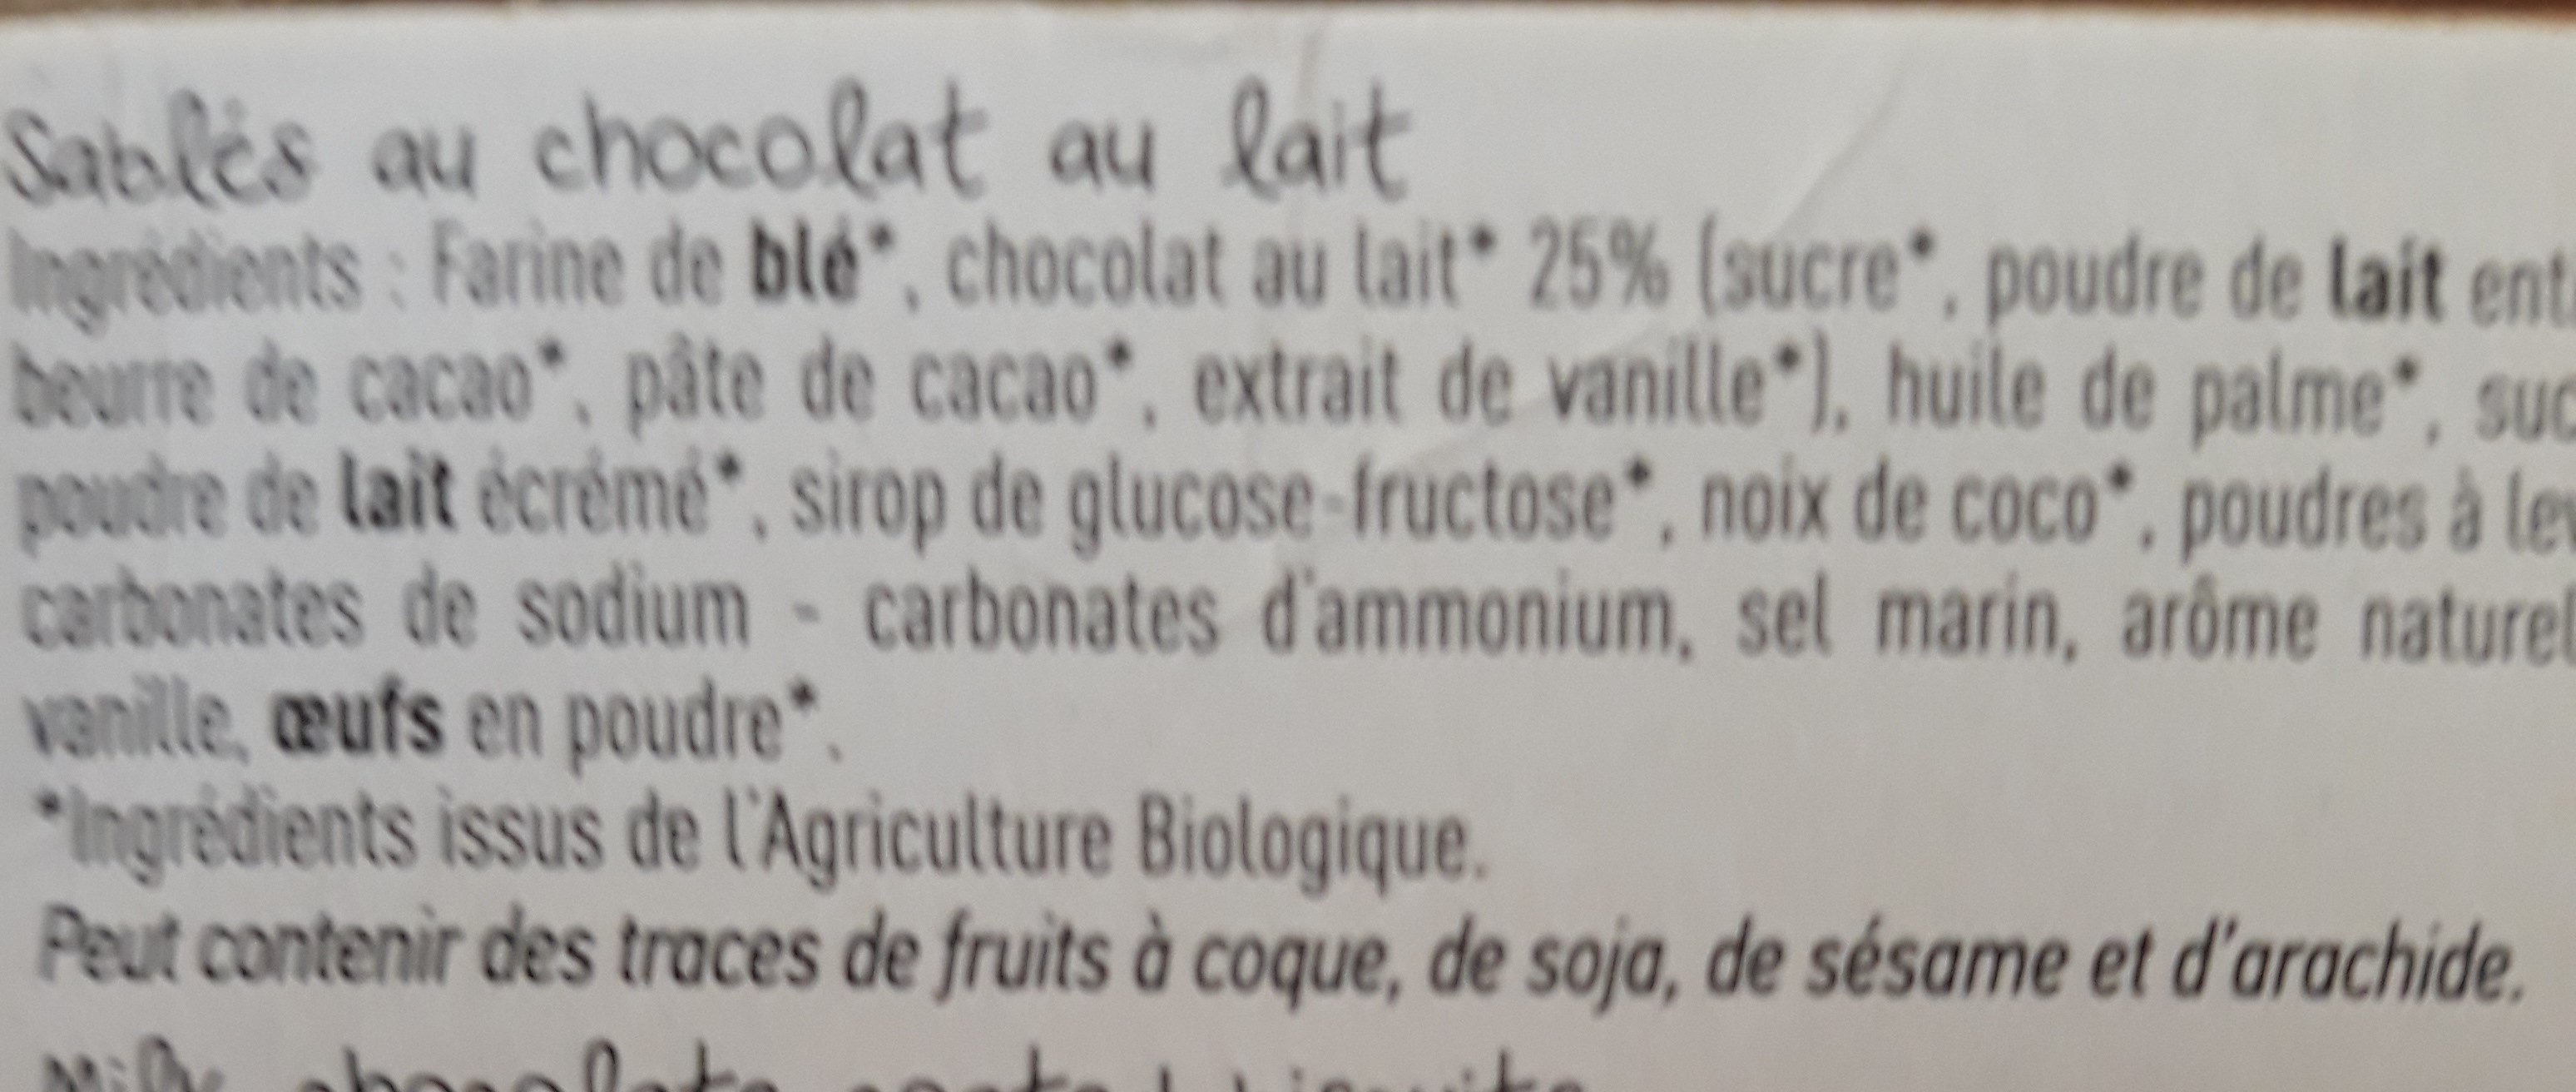 Sablé au chocolat au lait BIO - Ingrédients